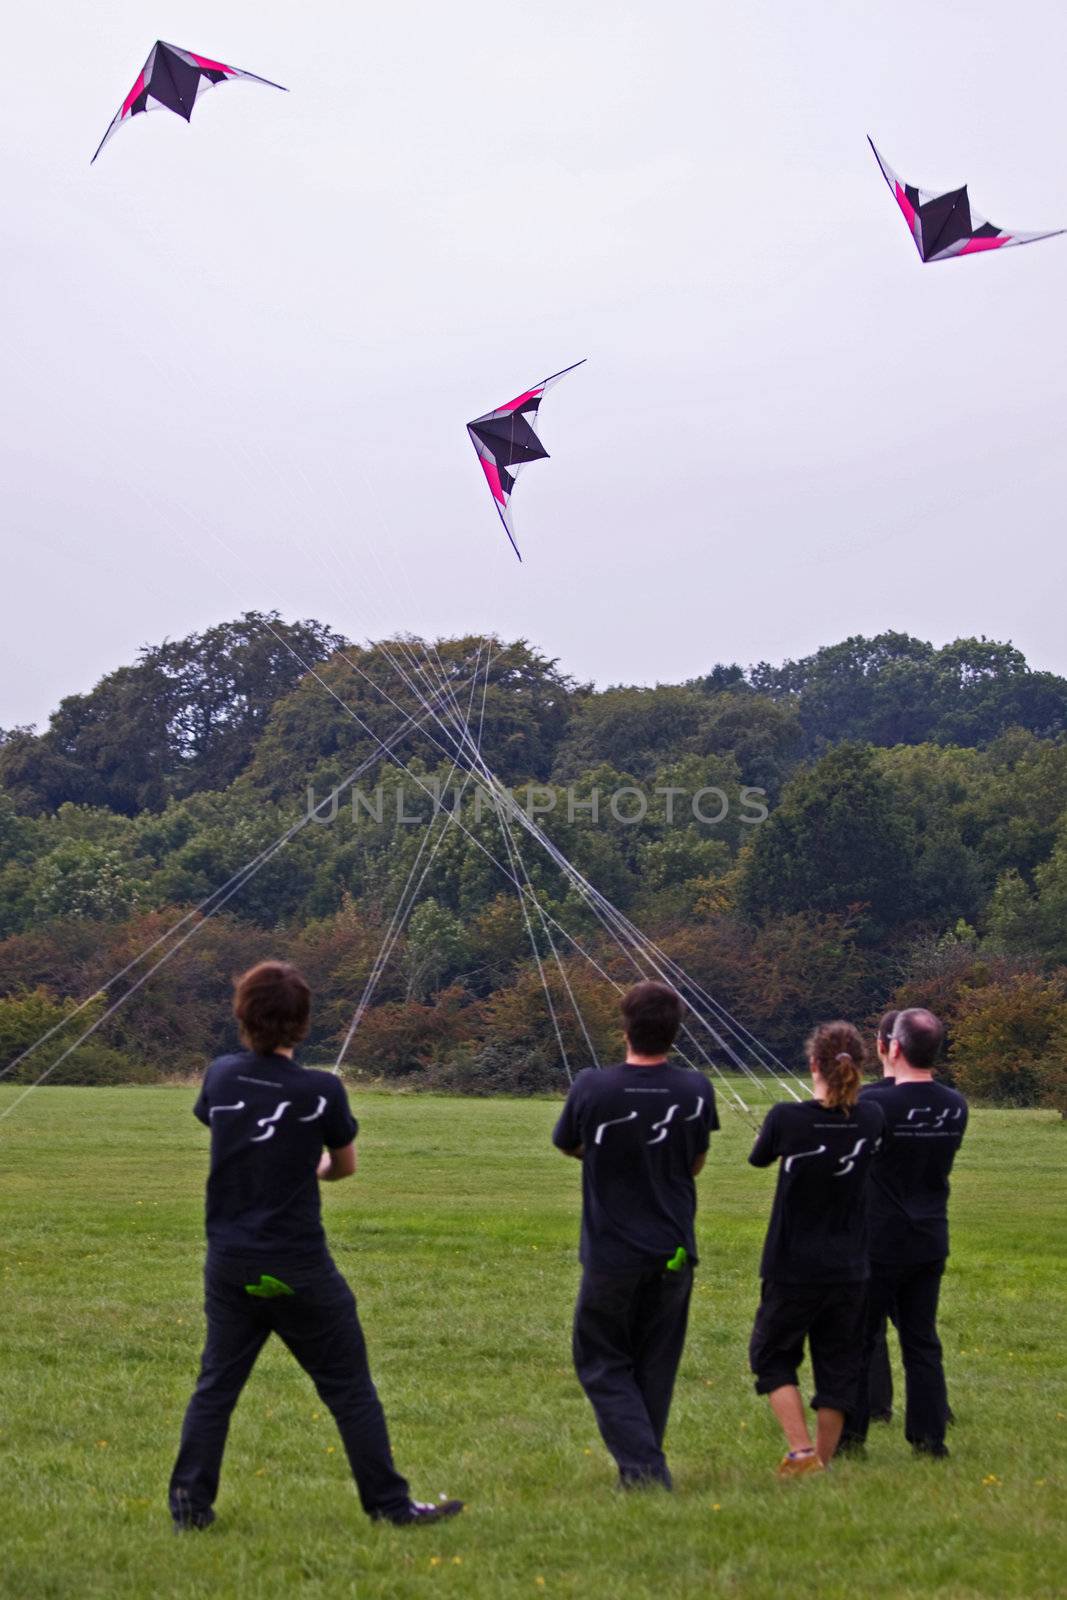 Kite Flyers by pjhpix